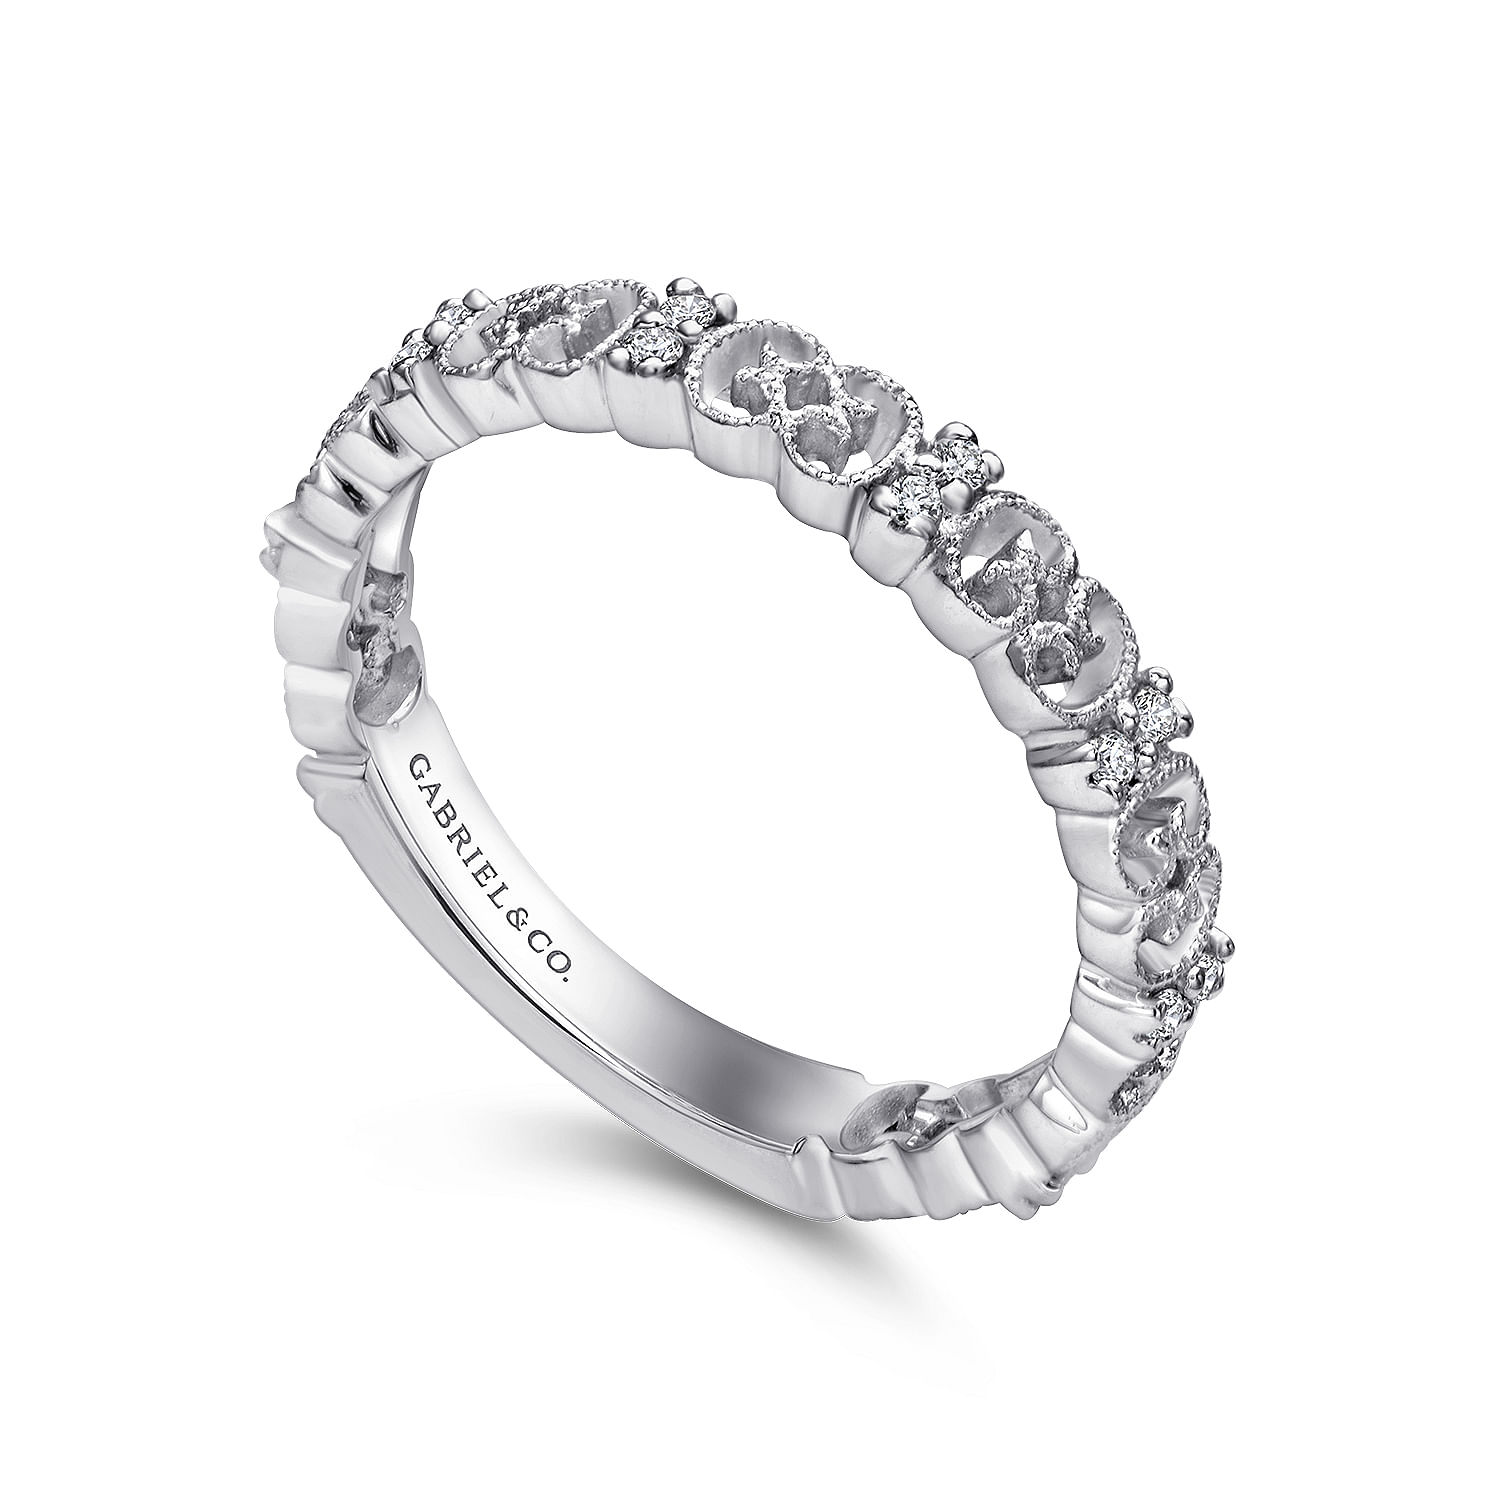 14K White Gold Ornate Milgrain Diamond Ring